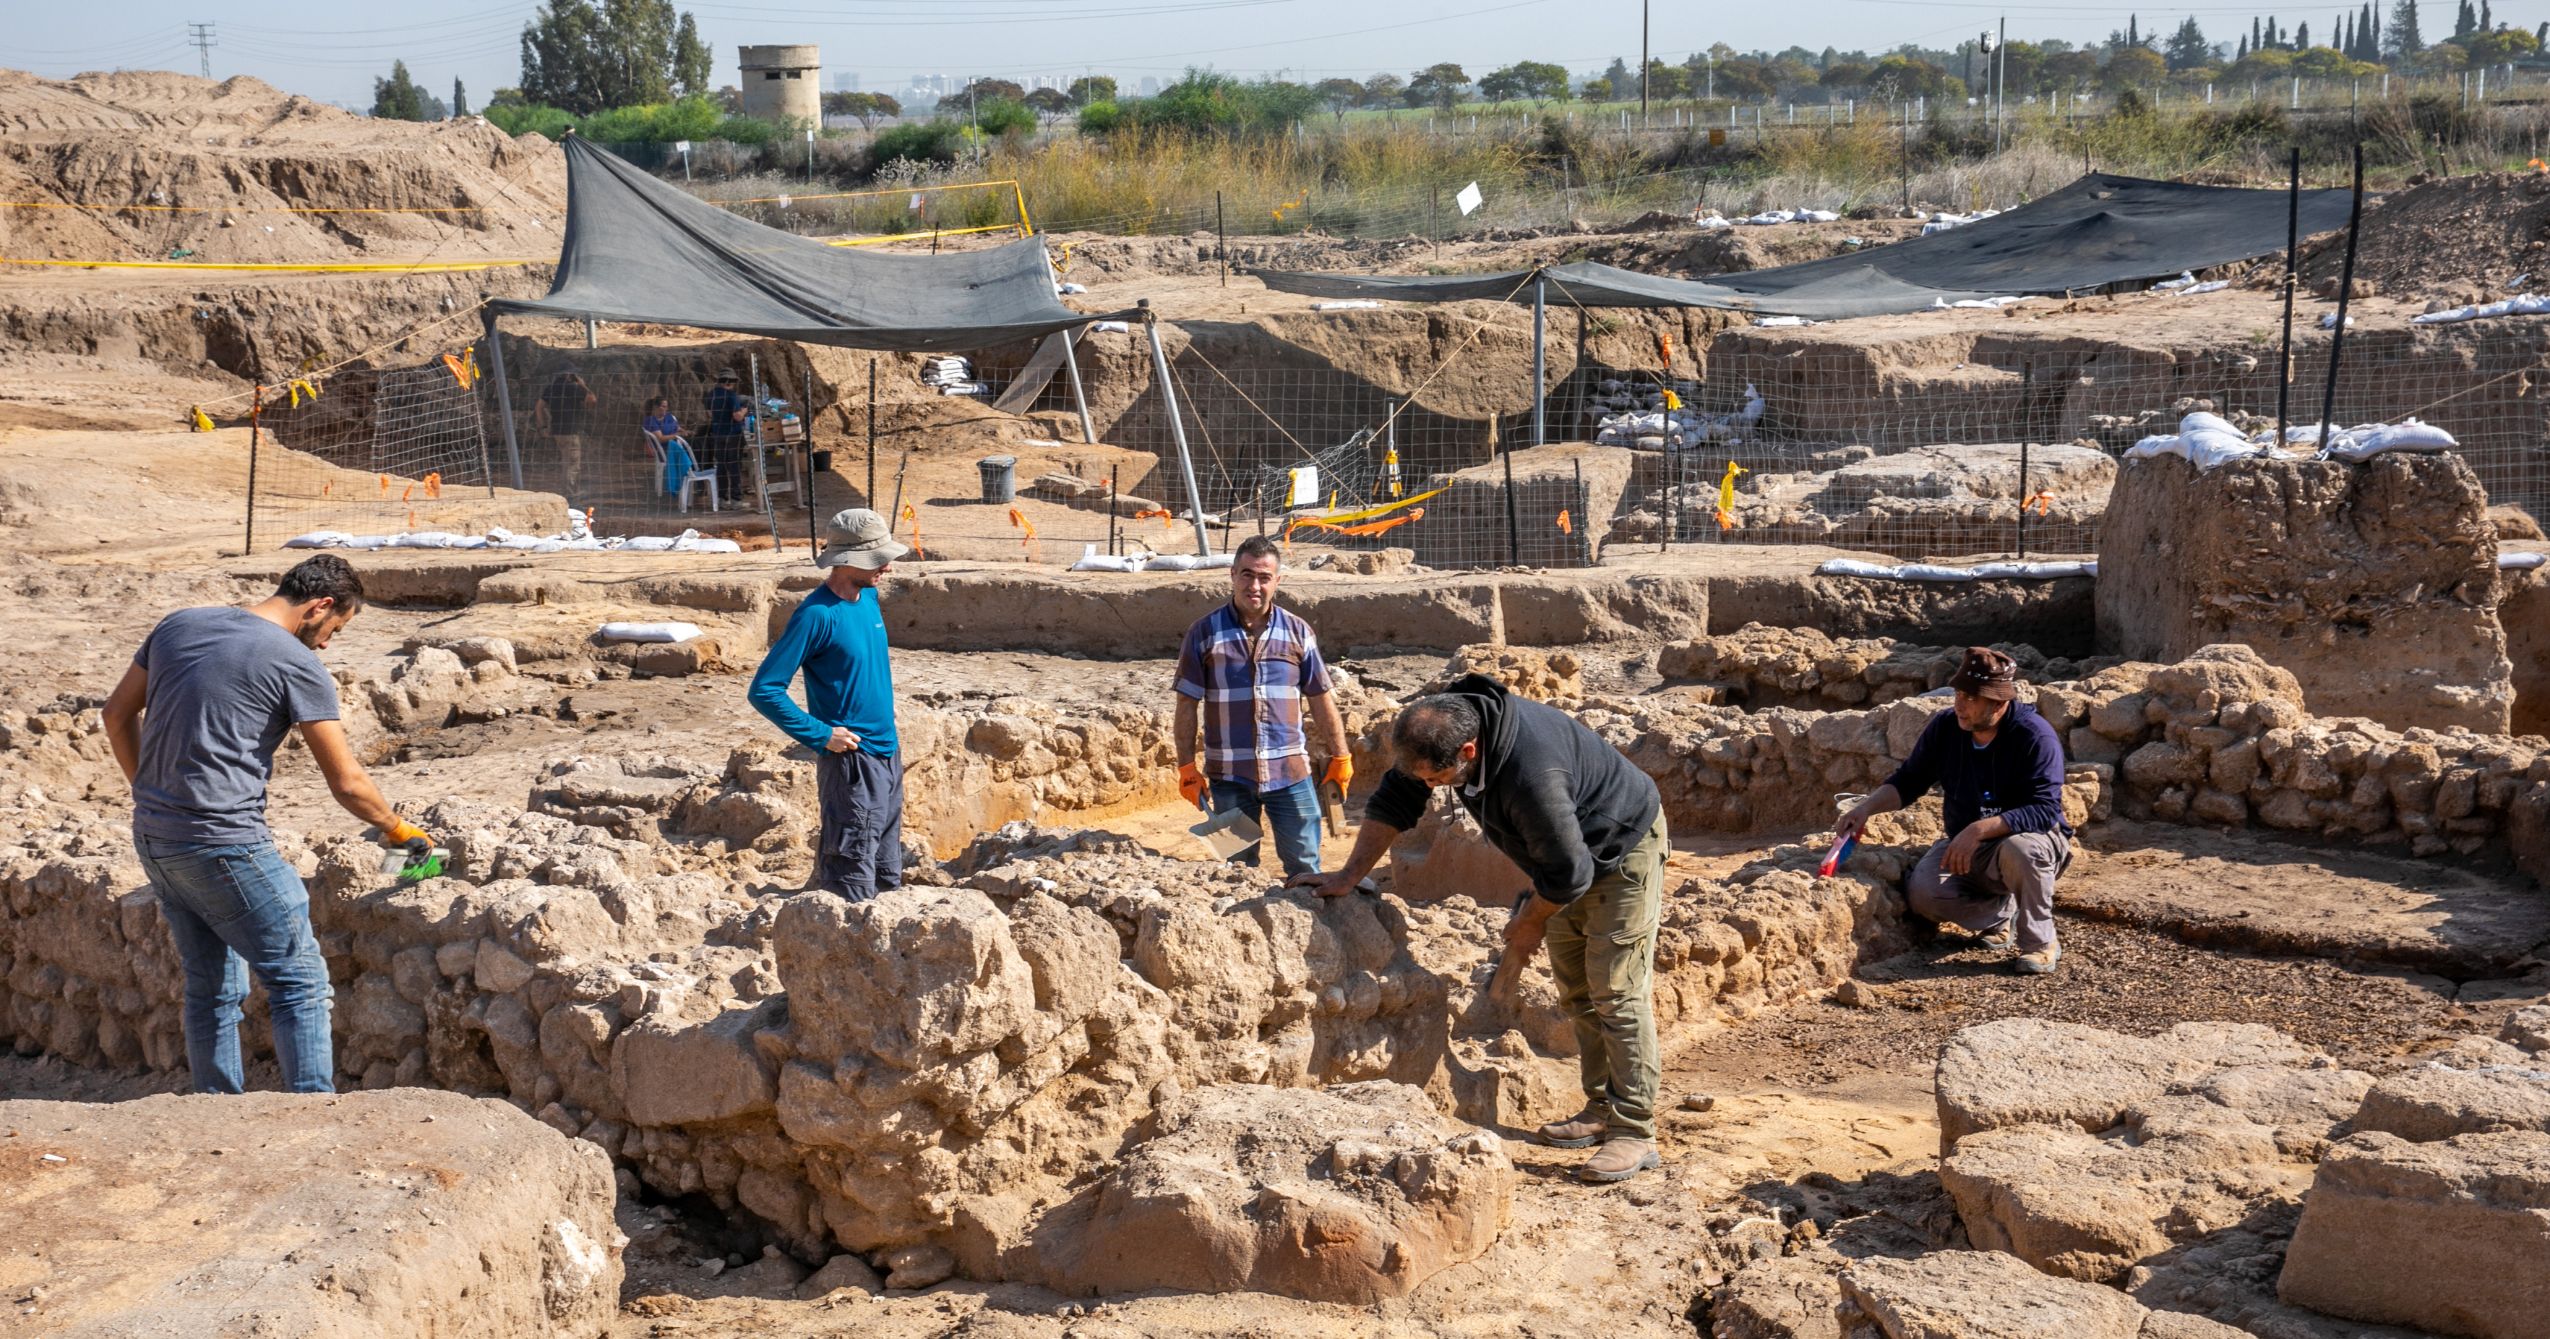 חפירות של רשות העתיקות ביבנה, באתר מתקופת הסנהדרין | צילום: יוסי אלוני, פלאש 90